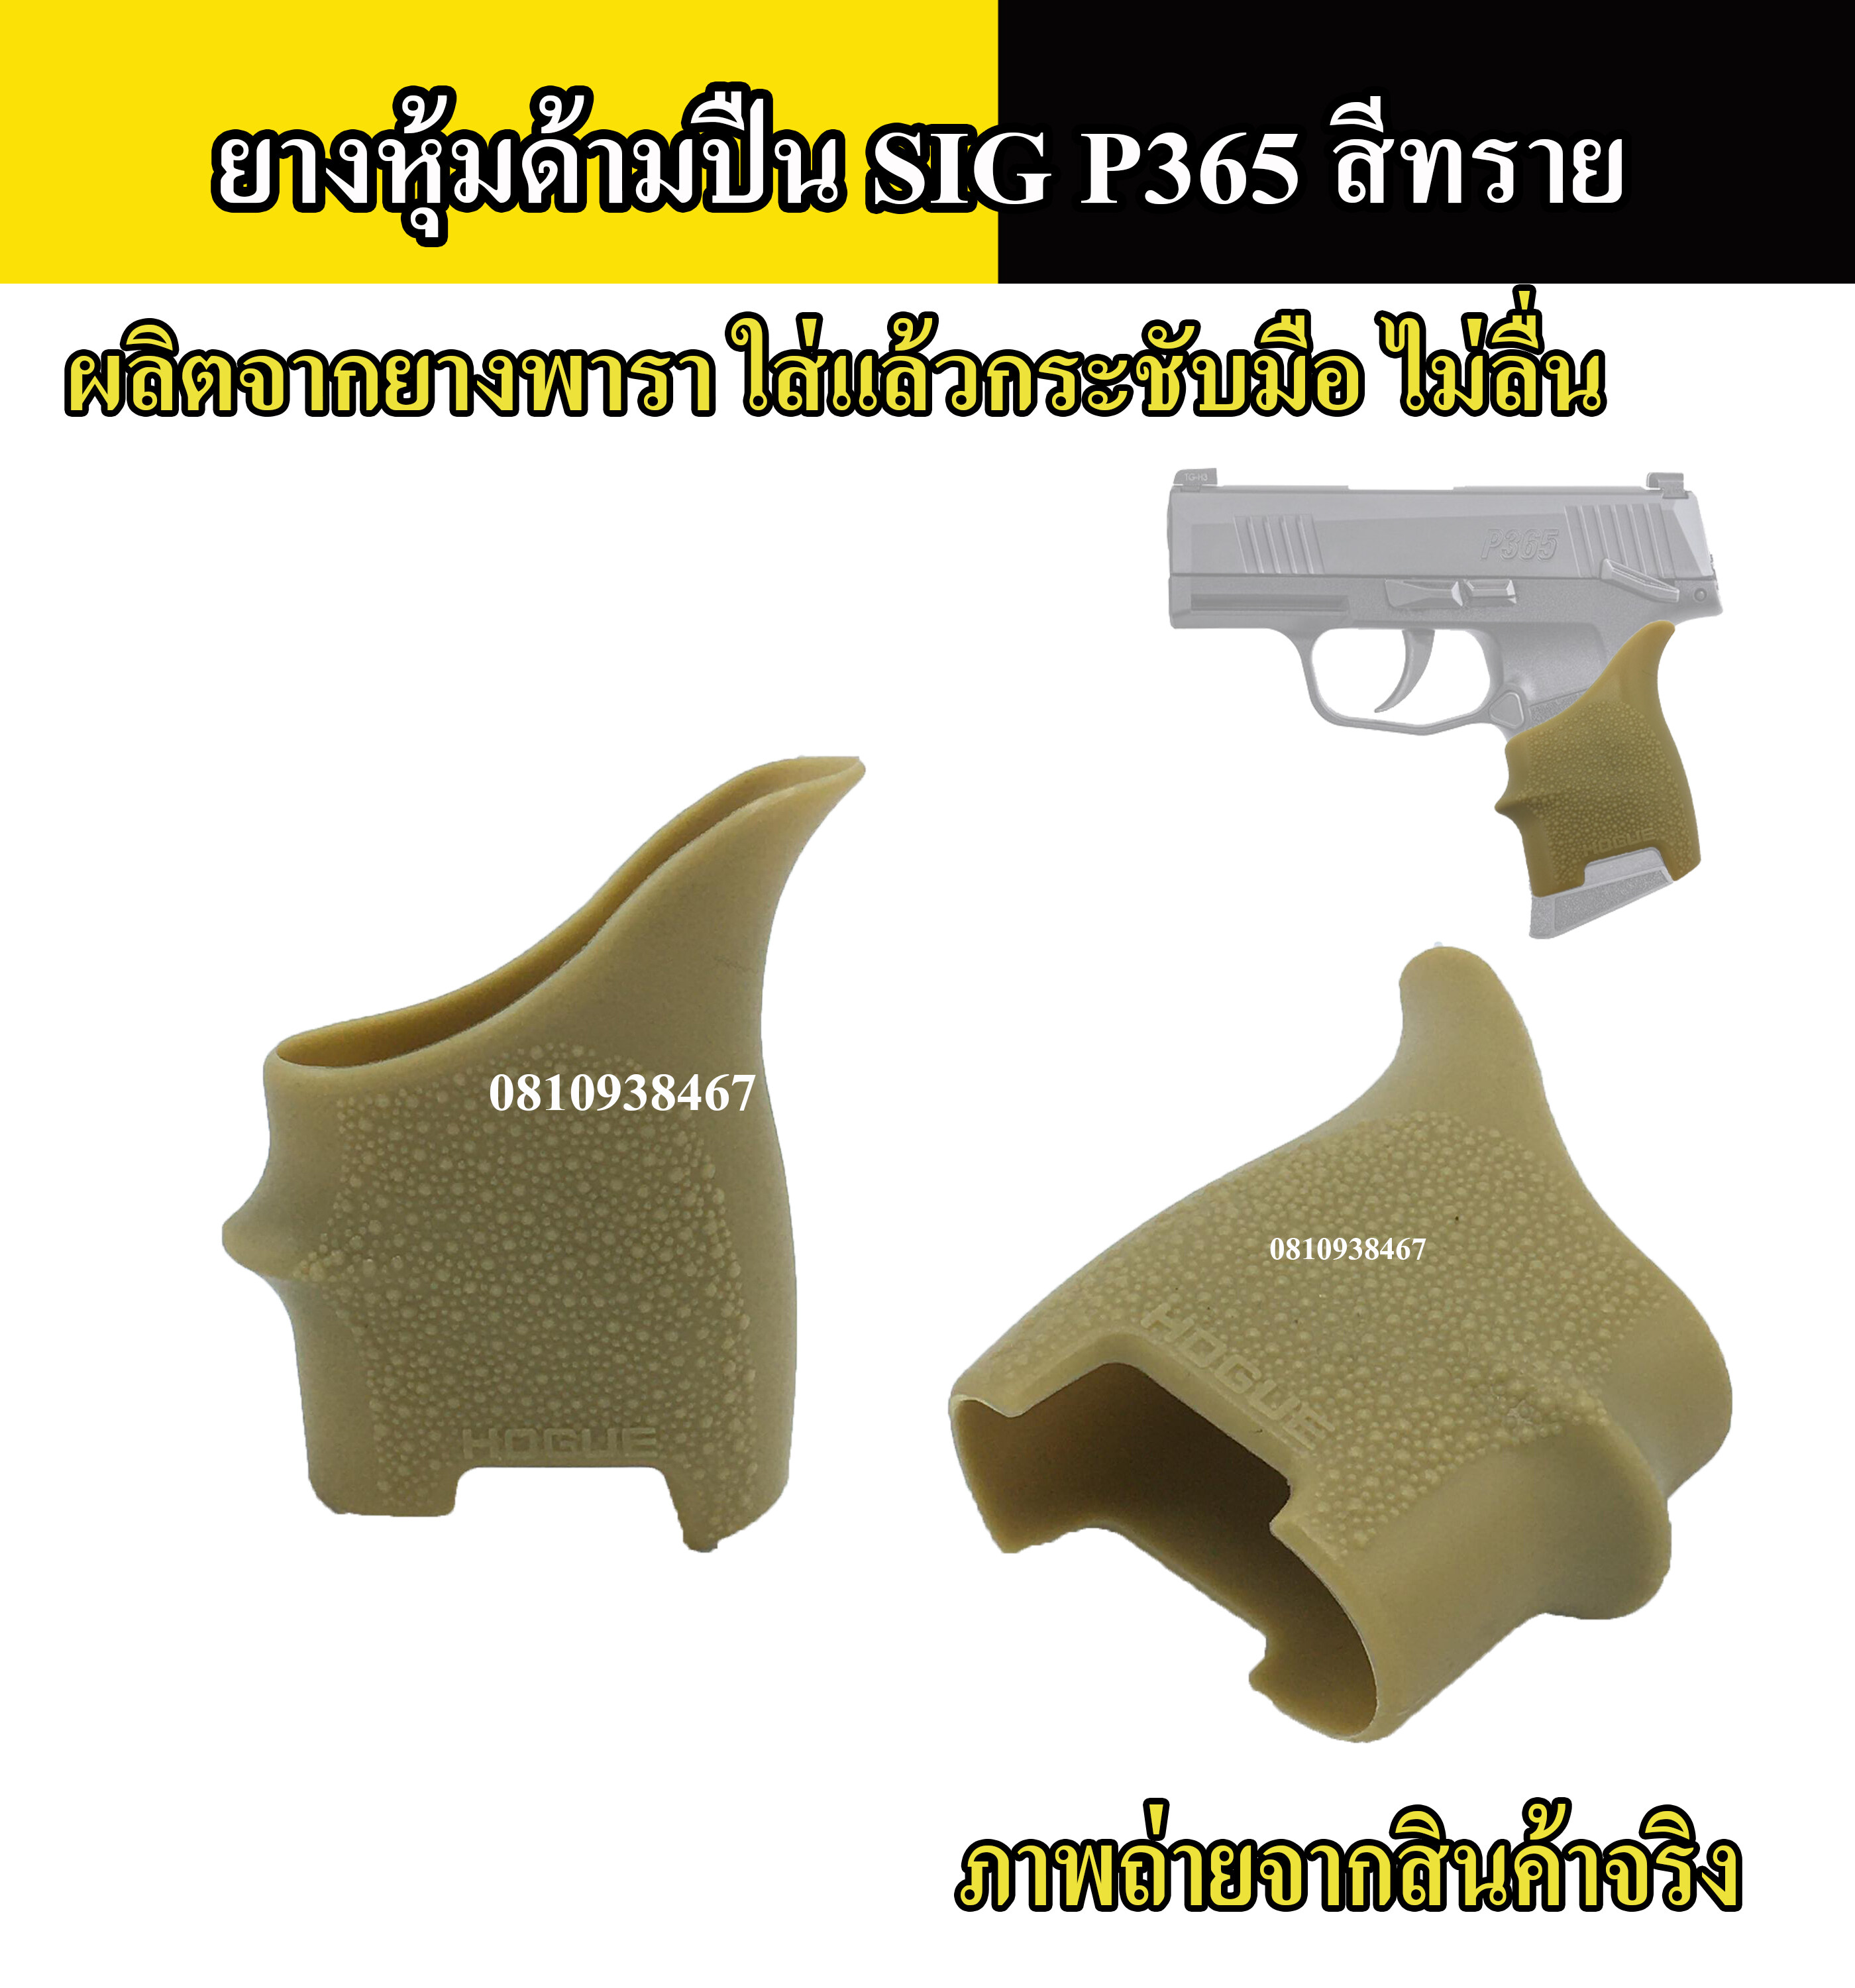 ยางหุ้มด้ามปืน SIG P365 กันลื่น สีดำ สีทราย สีเขียว Grips ปืนสั้นรุ่นสำหรับ ปืนสั้น SIG P 365 tactical grip glove gloc